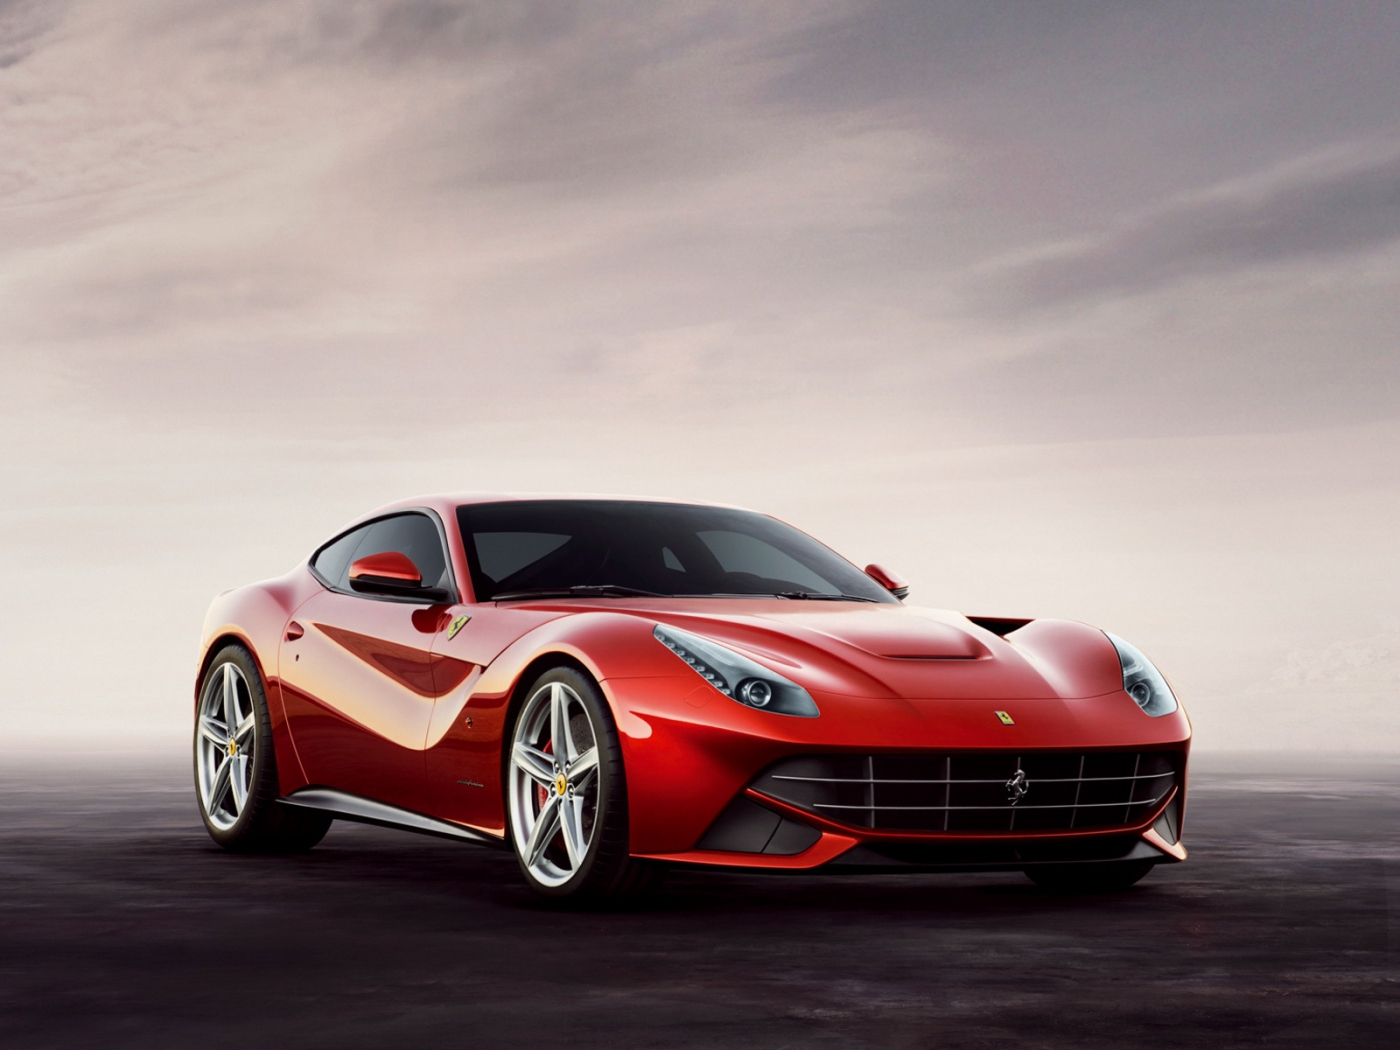 Скачать картинку Феррари (Ferrari), Машины, Транспорт в телефон бесплатно.